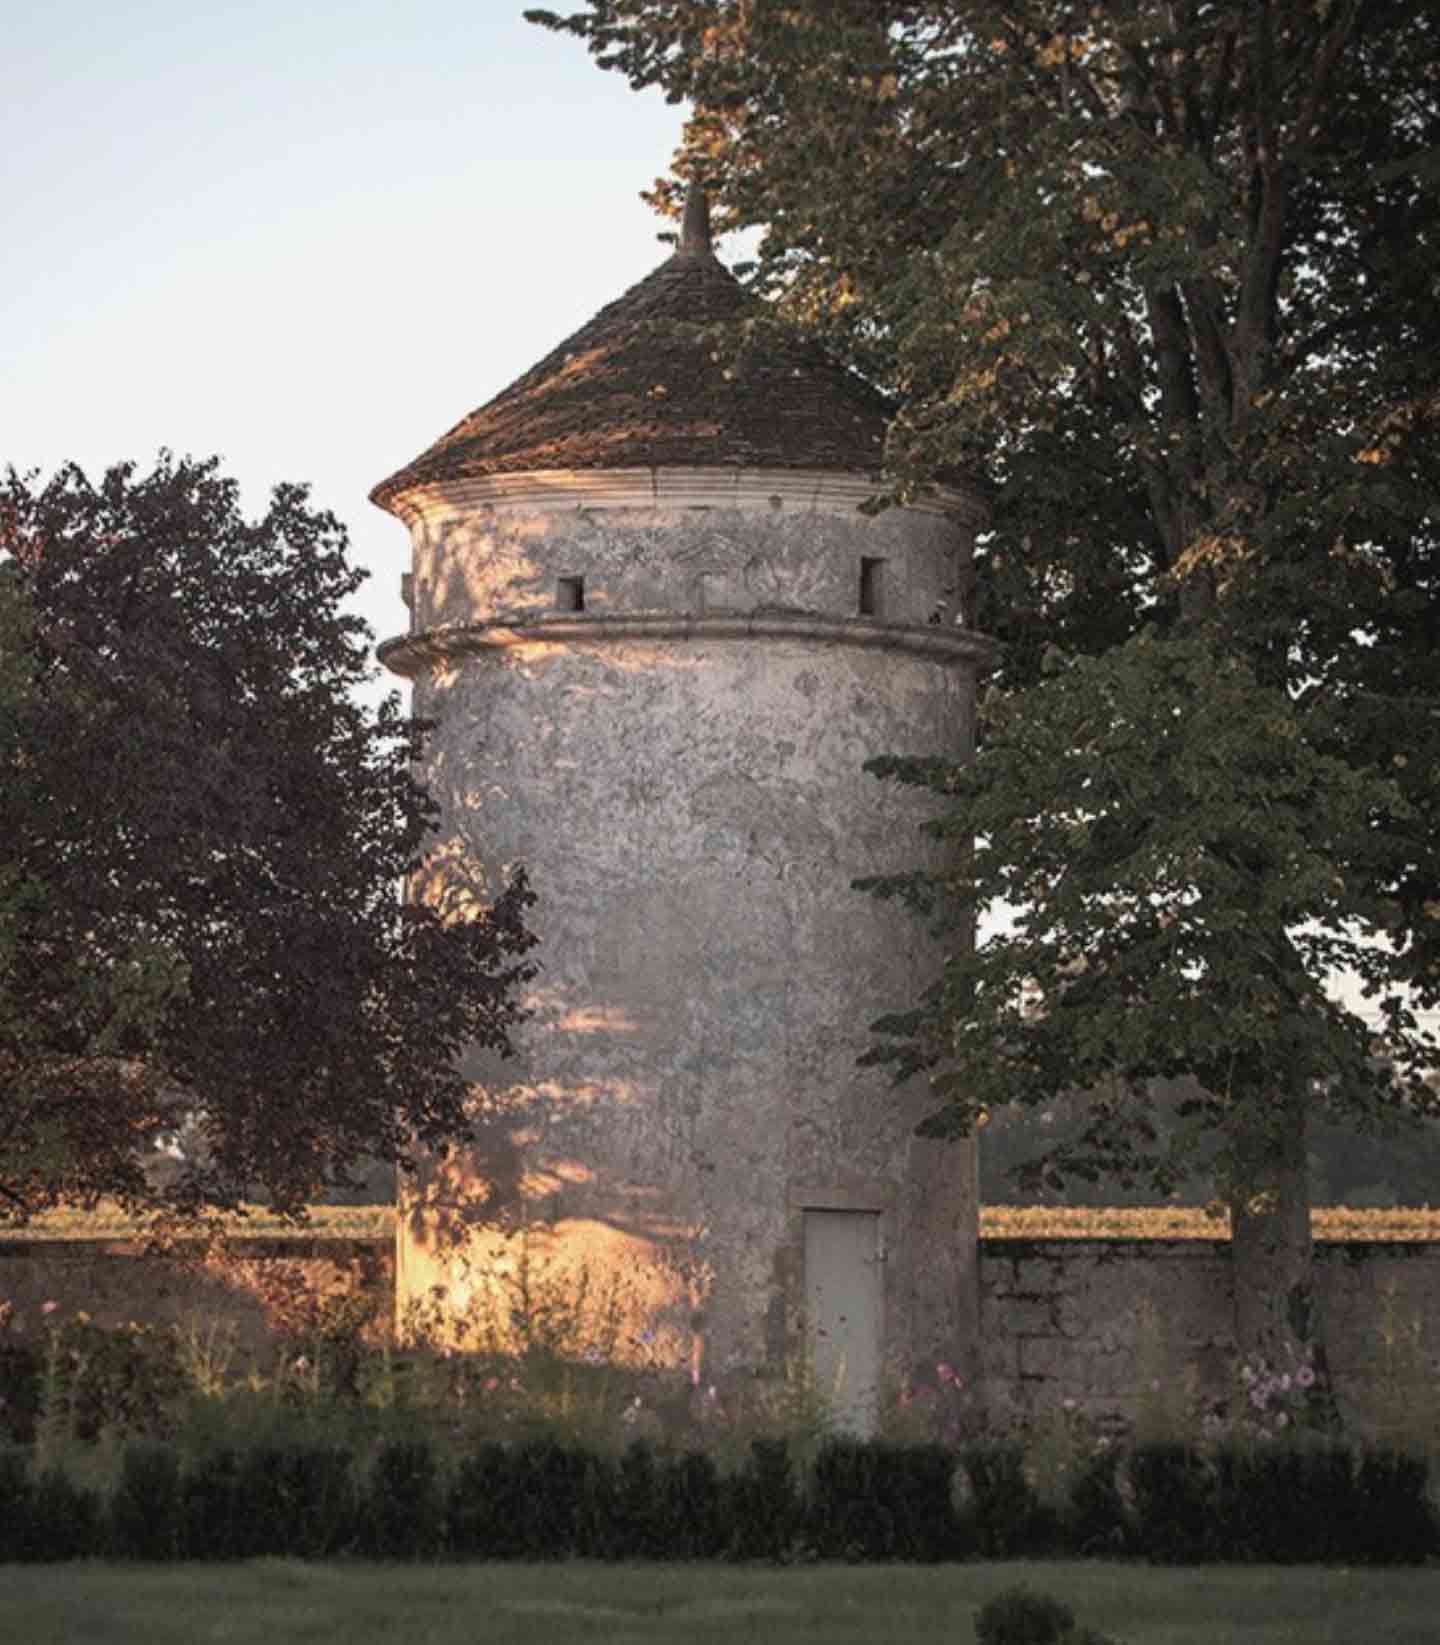 Château Corbin